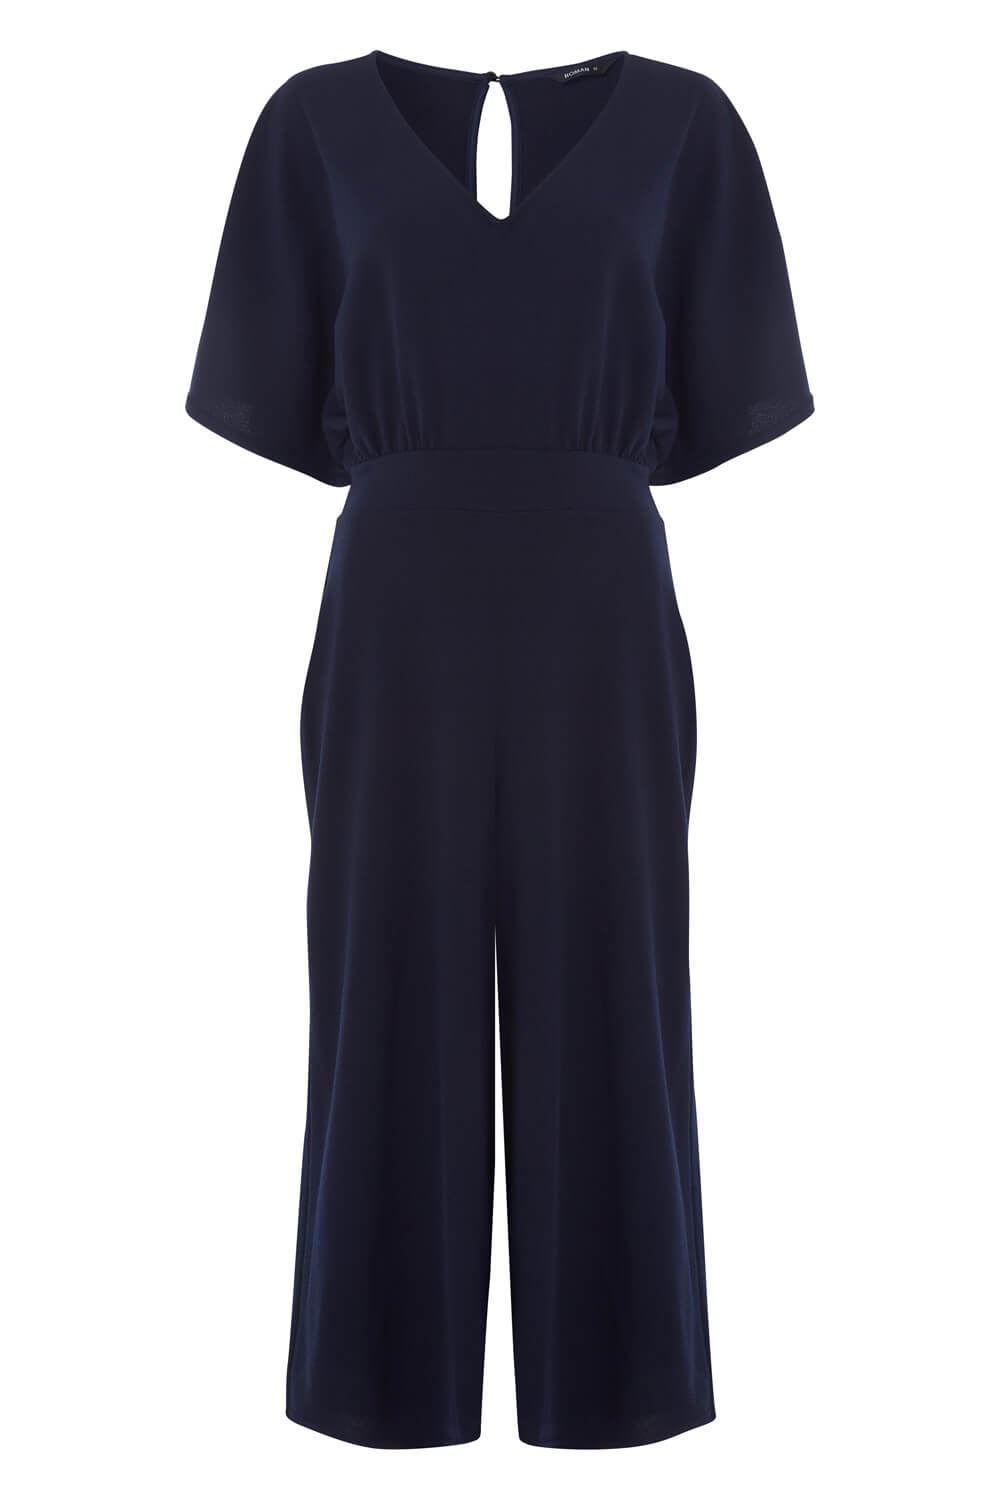 Plain Wrap Culotte Jumpsuit in Navy Blue - Roman Originals UK